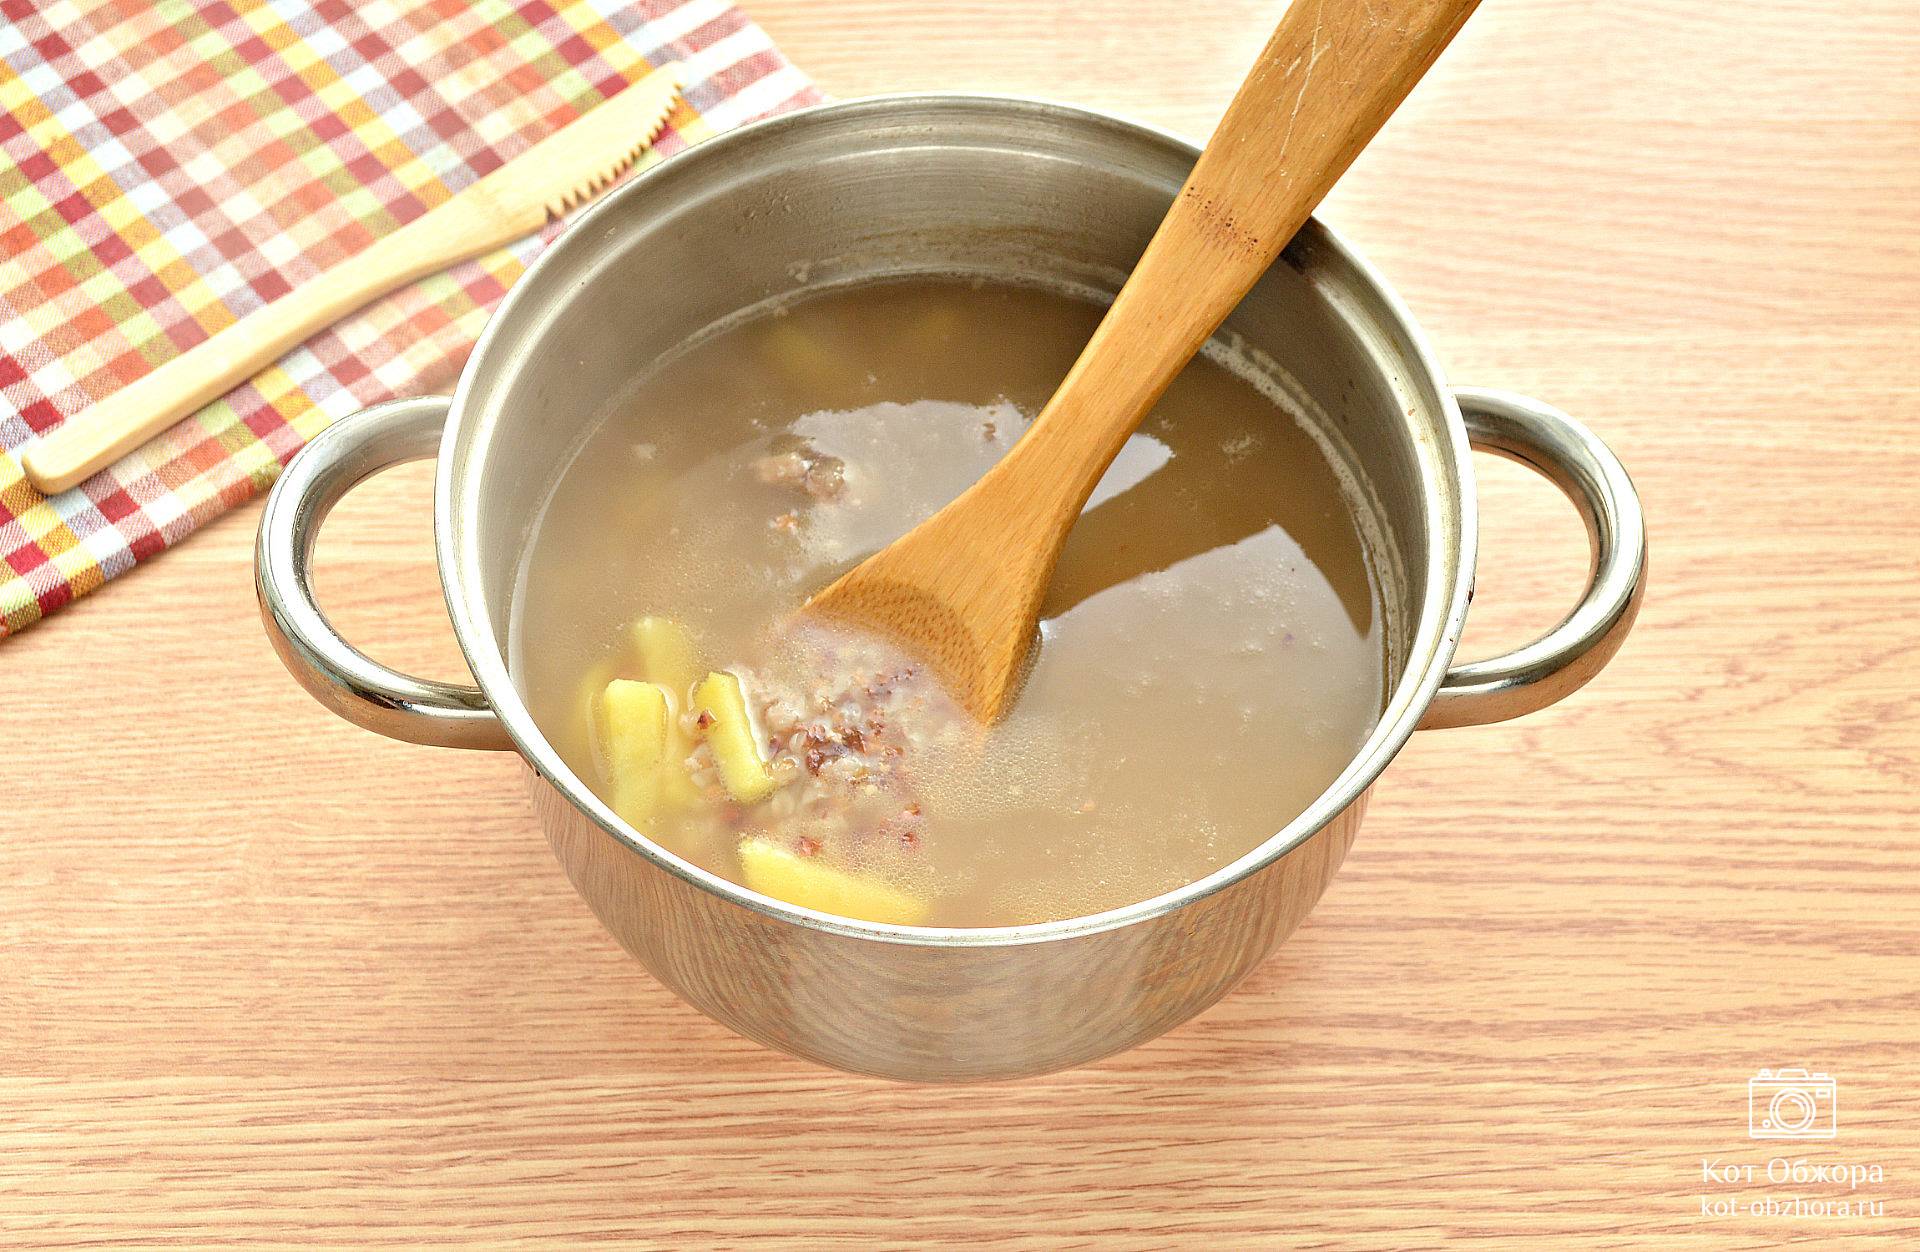 Ингредиенты для «Суп гороховый со свиной грудинкой»: